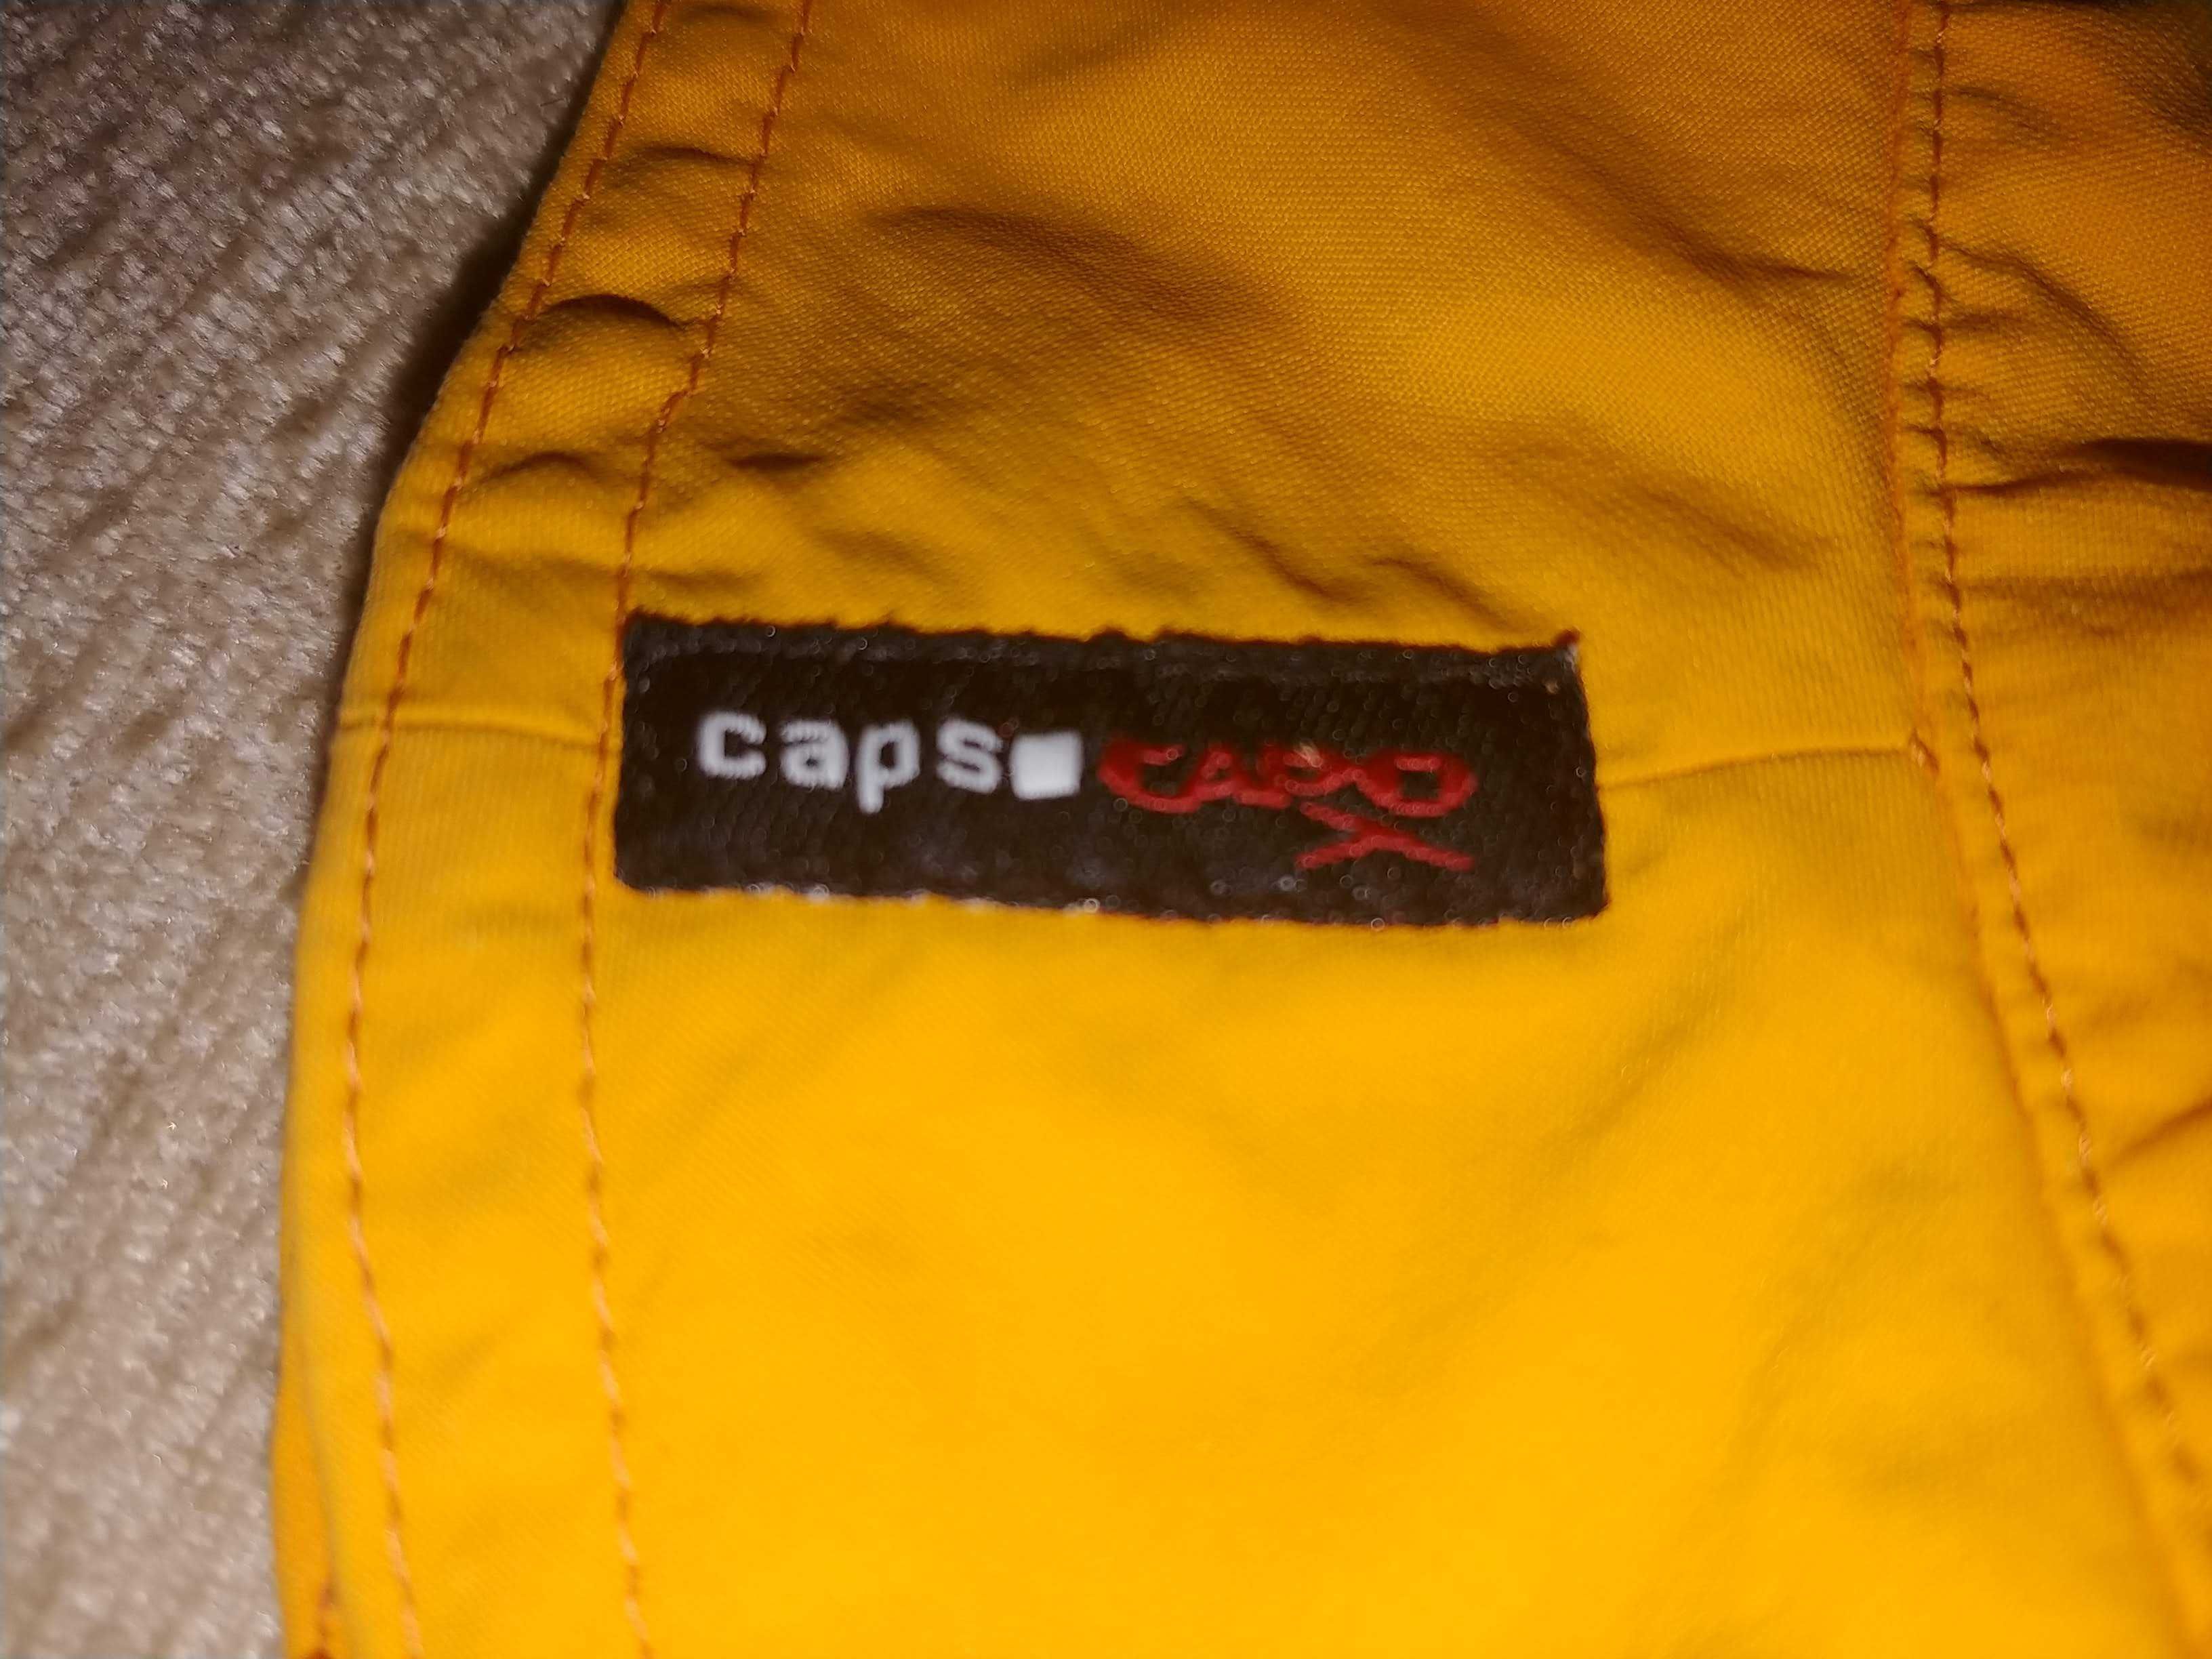 Дитяча панама Caps Capo жовтого кольору обхват голови 50 см